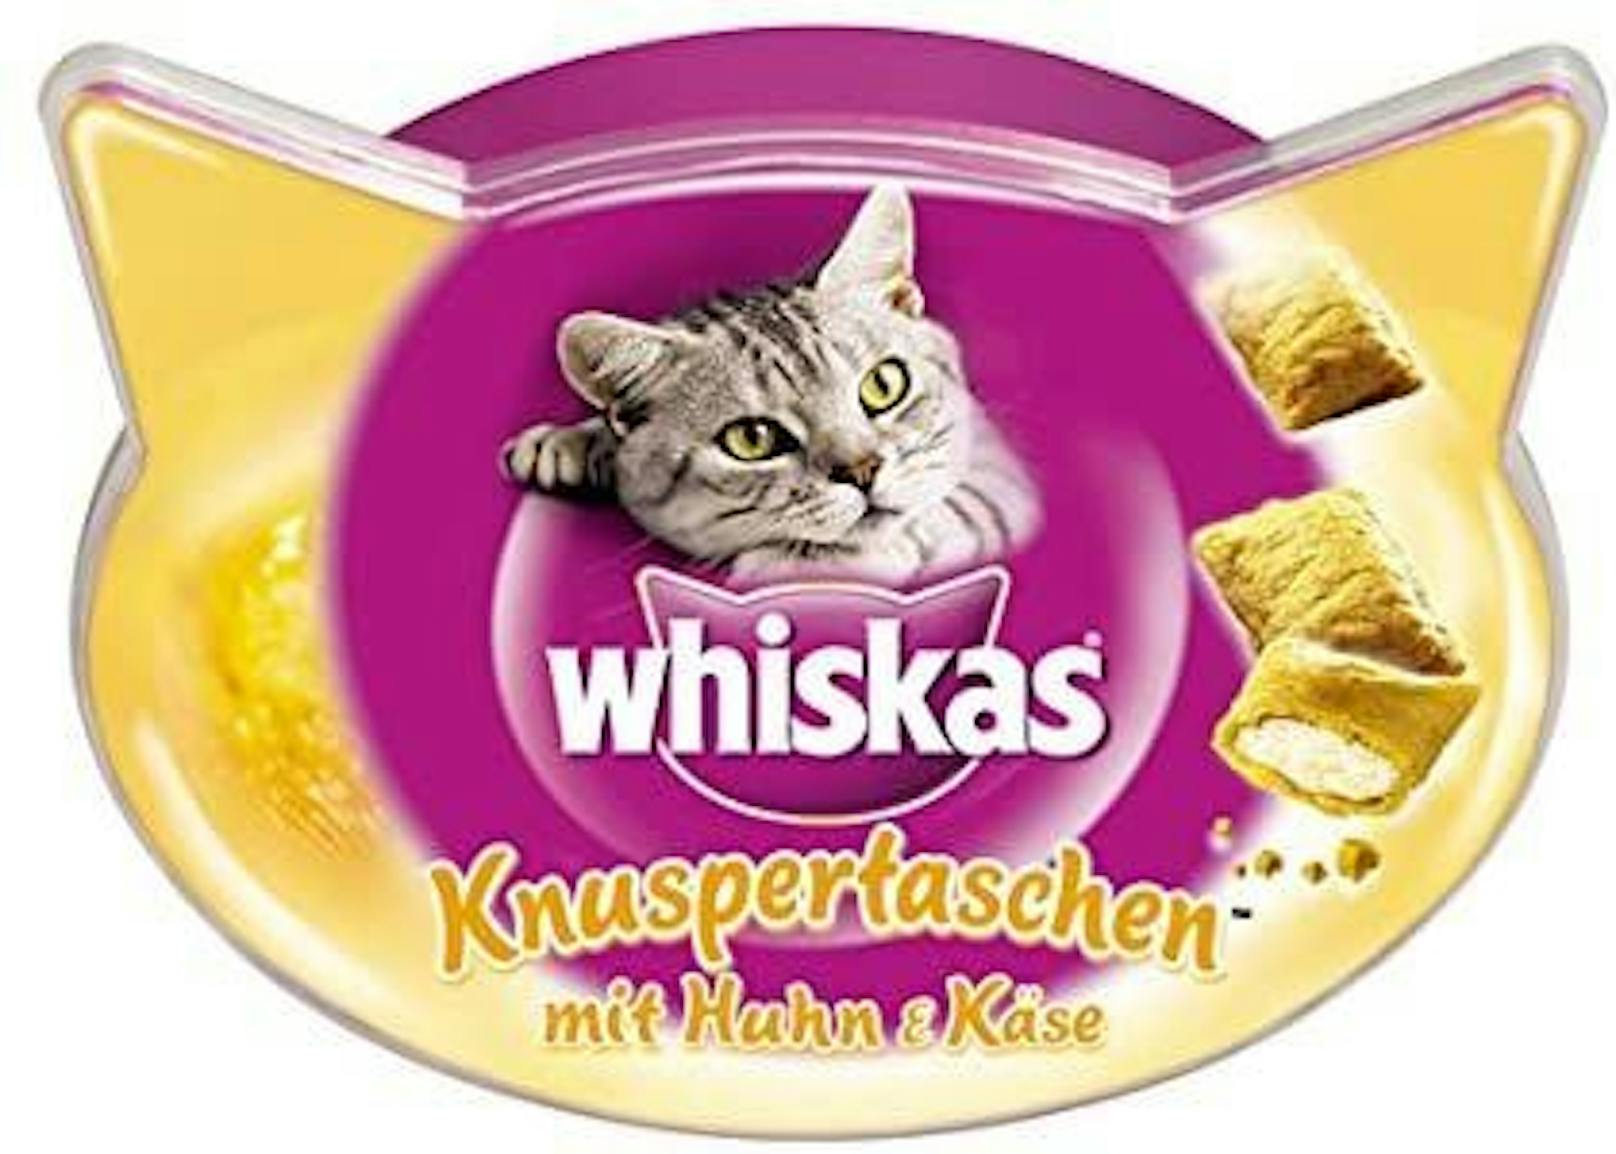 <strong>Whiskas Knuspertaschen:&nbsp;</strong>Whiskas setzt Katzen auf Diät und verkauft pro Packung nicht mehr 72 Gramm, sondern 60 Gramm. Der Preis bleibt gleich, was einer effektiven Erhöhung von 20 Prozent entspricht.&nbsp;